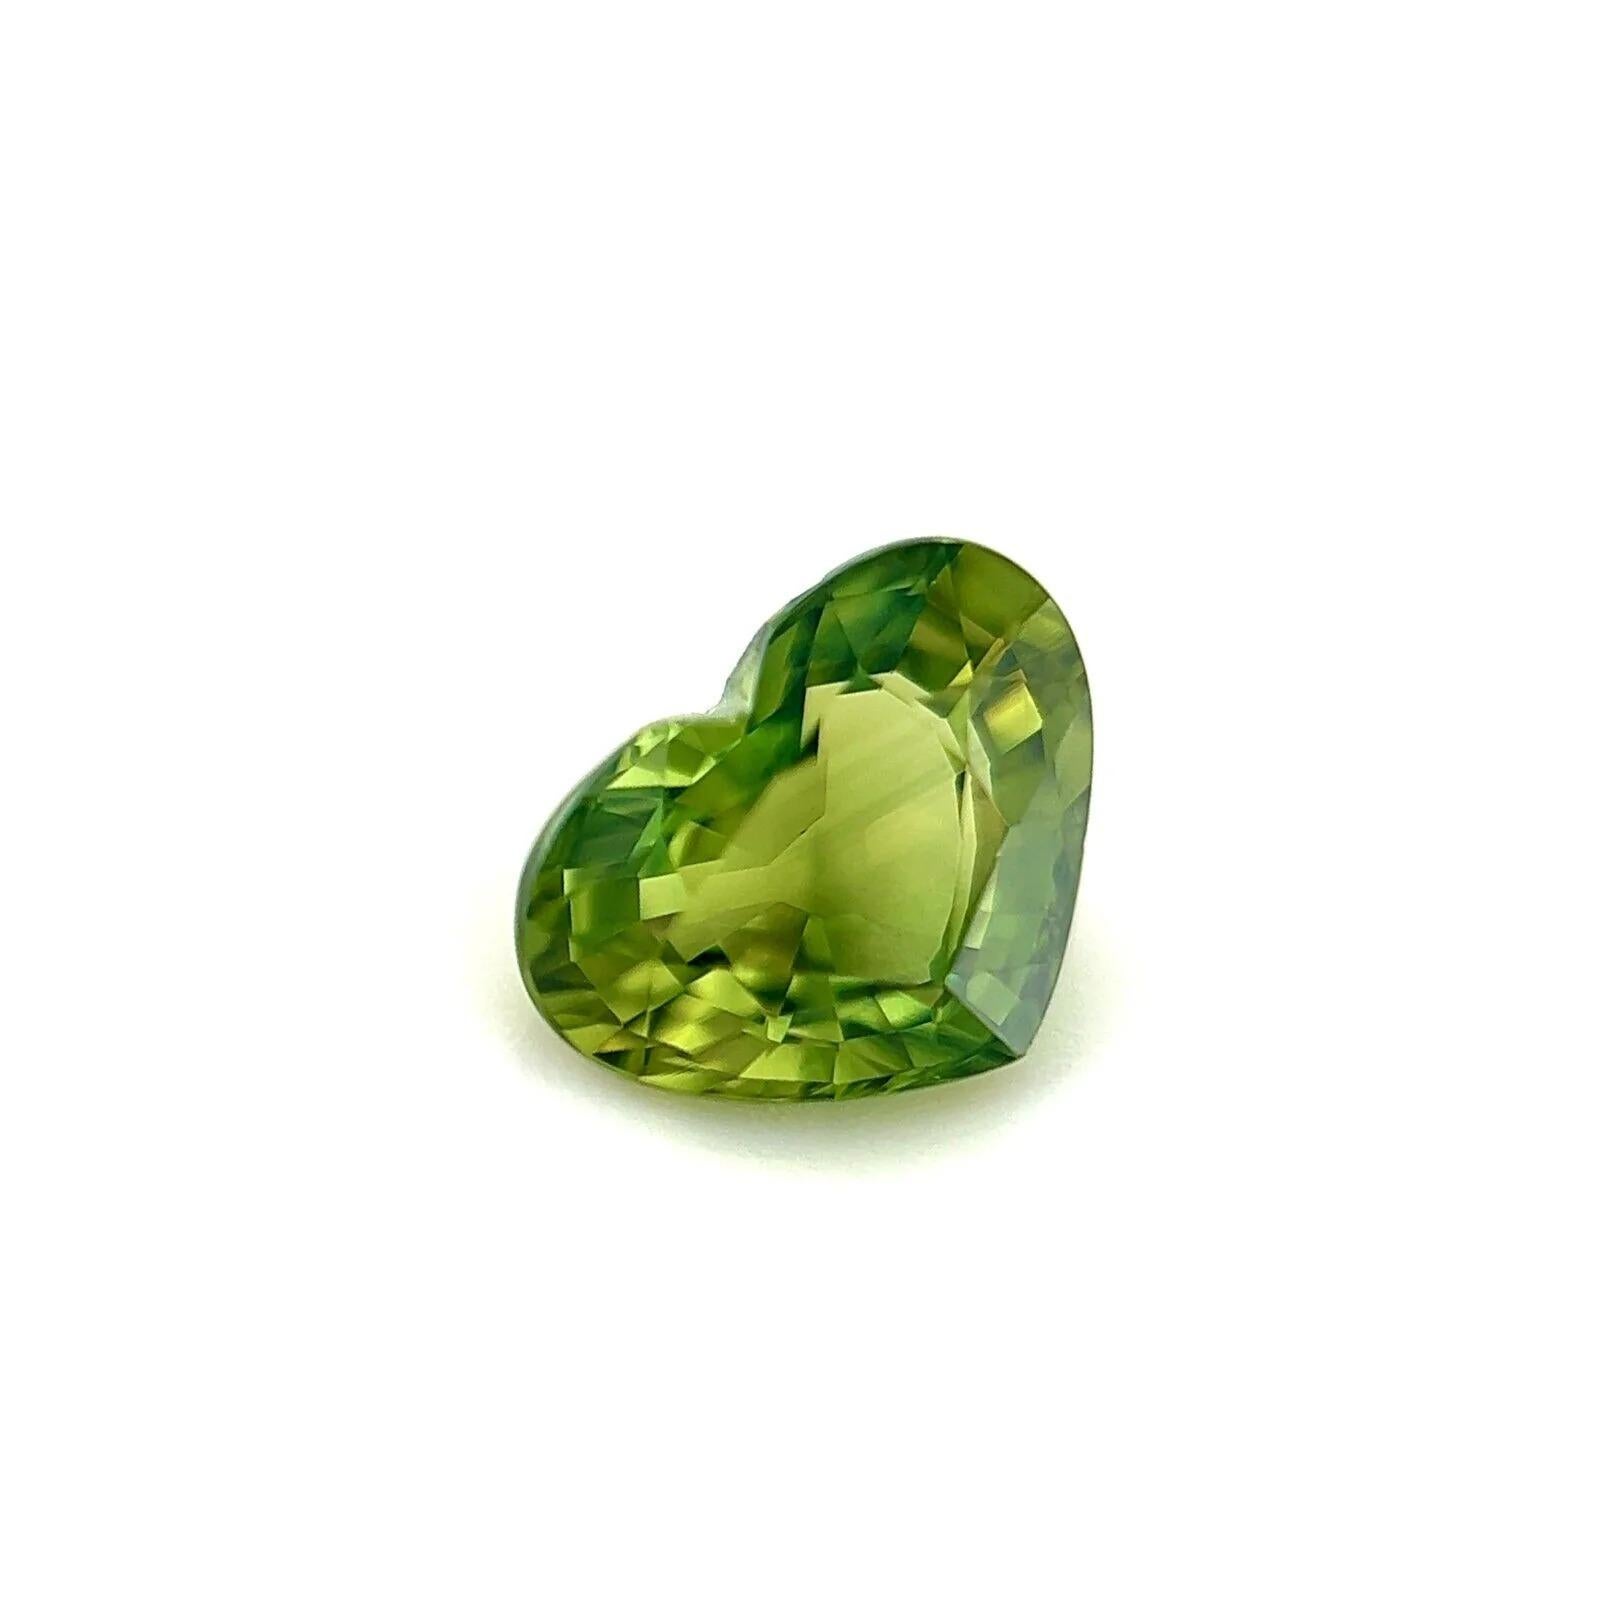 Saphir australien fin de couleur verte 1,20ct pierre précieuse en vrac taille cœur 7,2x5,5mm

Saphir vert naturel taillé en cœur.
1.20 Carat avec une belle et unique couleur verte. Très rare et stupéfiant à voir. Elle a une très bonne clarté, une